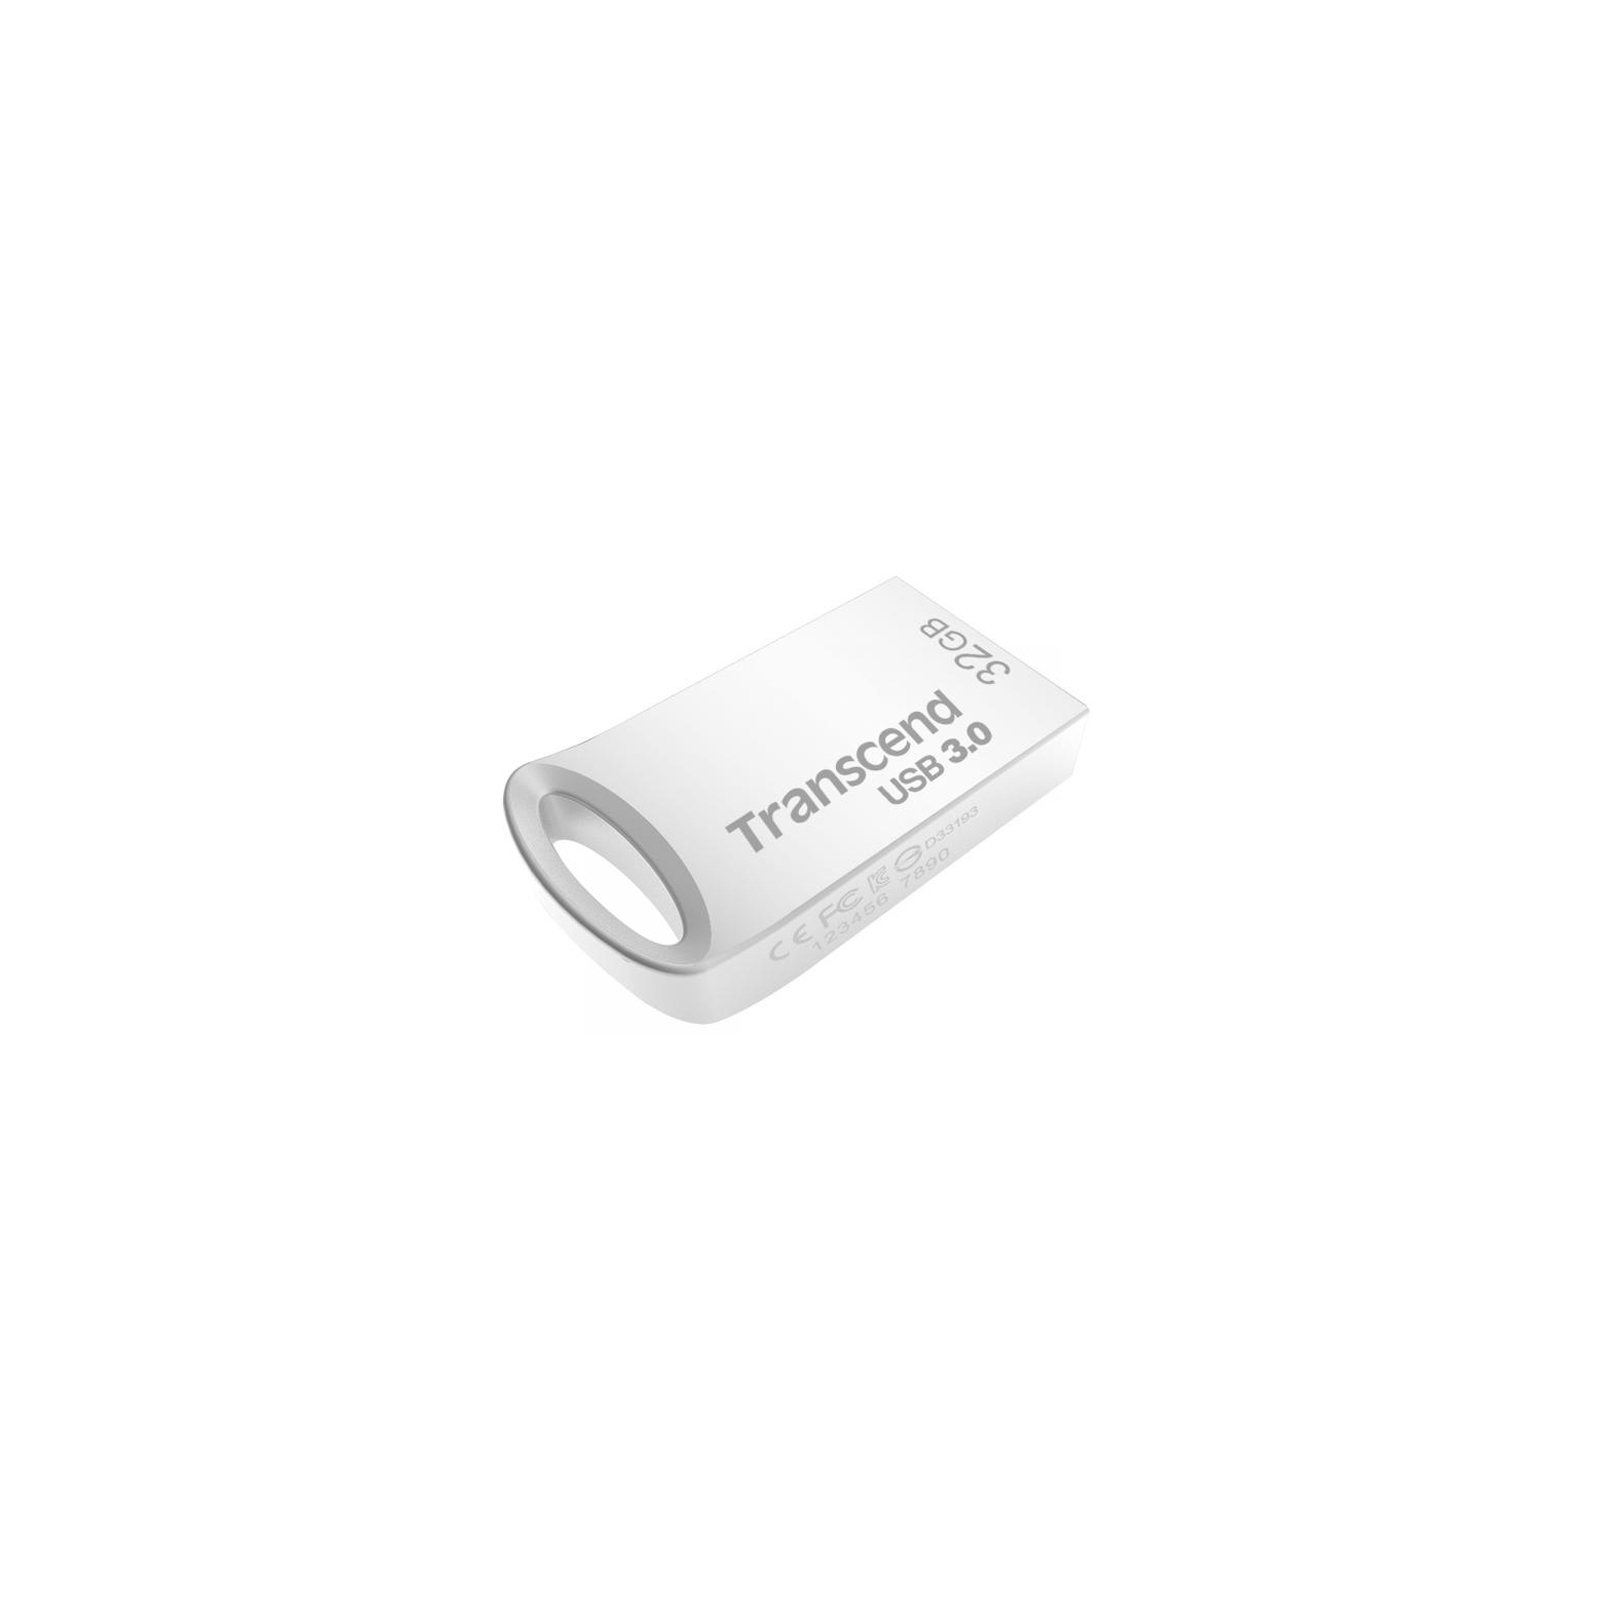 USB флеш накопитель Transcend 8GB JetFlash 710 USB3.0 (TS8GJF710S)